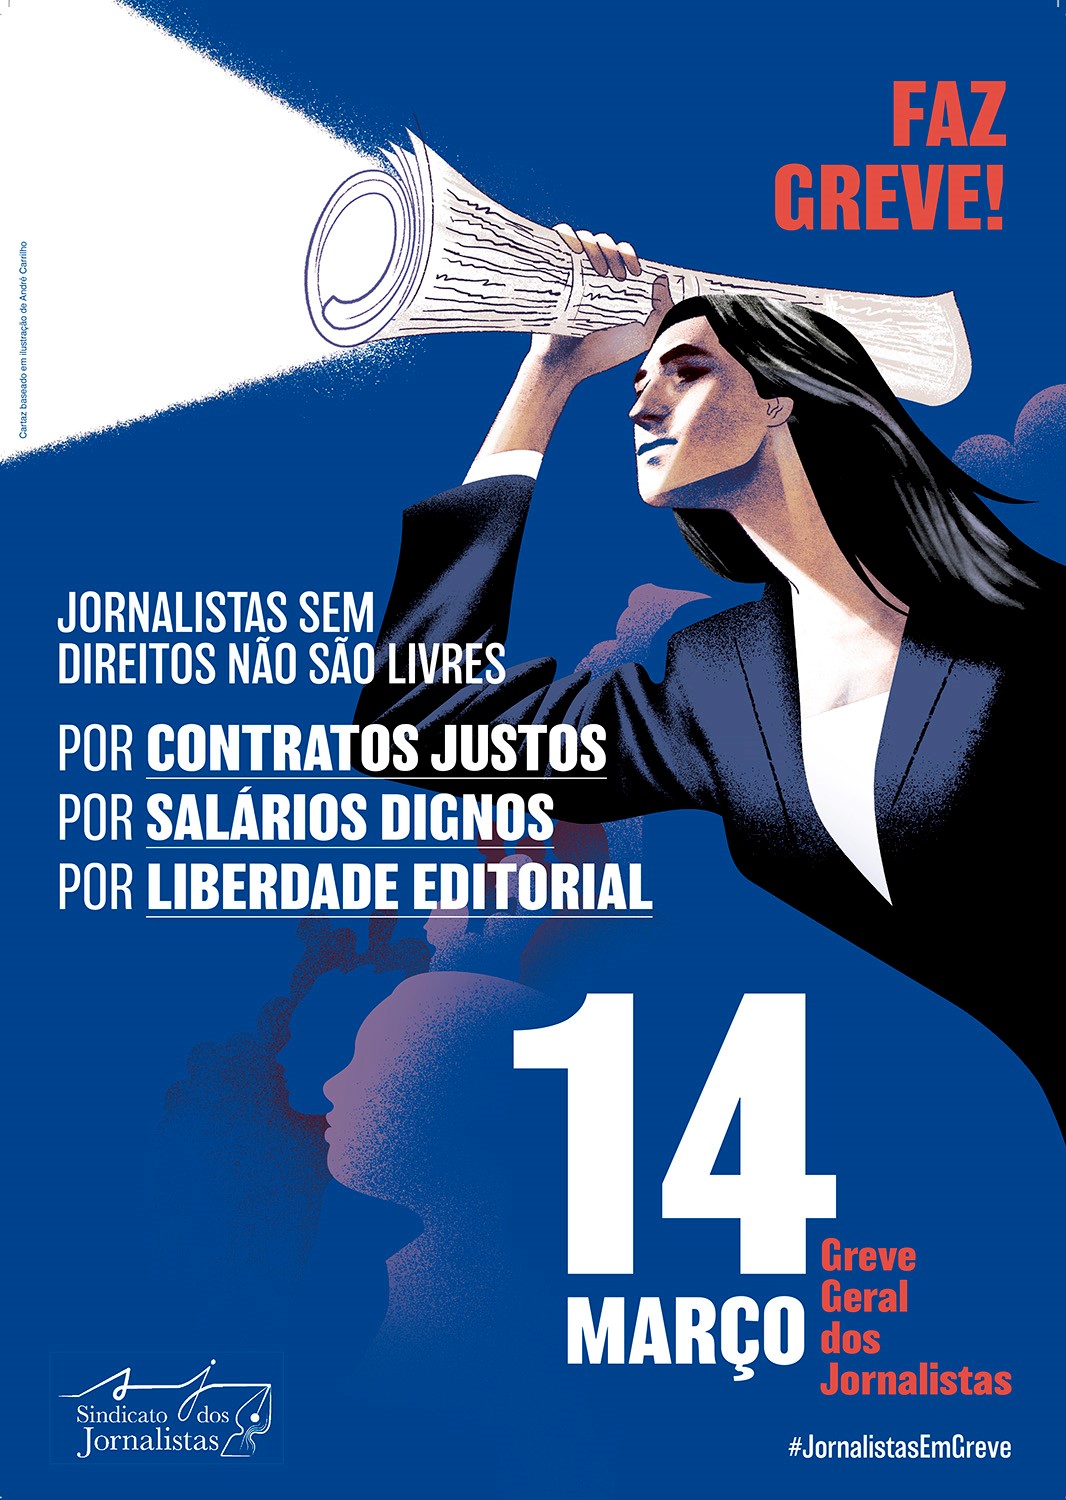 greve_geral_jornalistas_sem-direitos